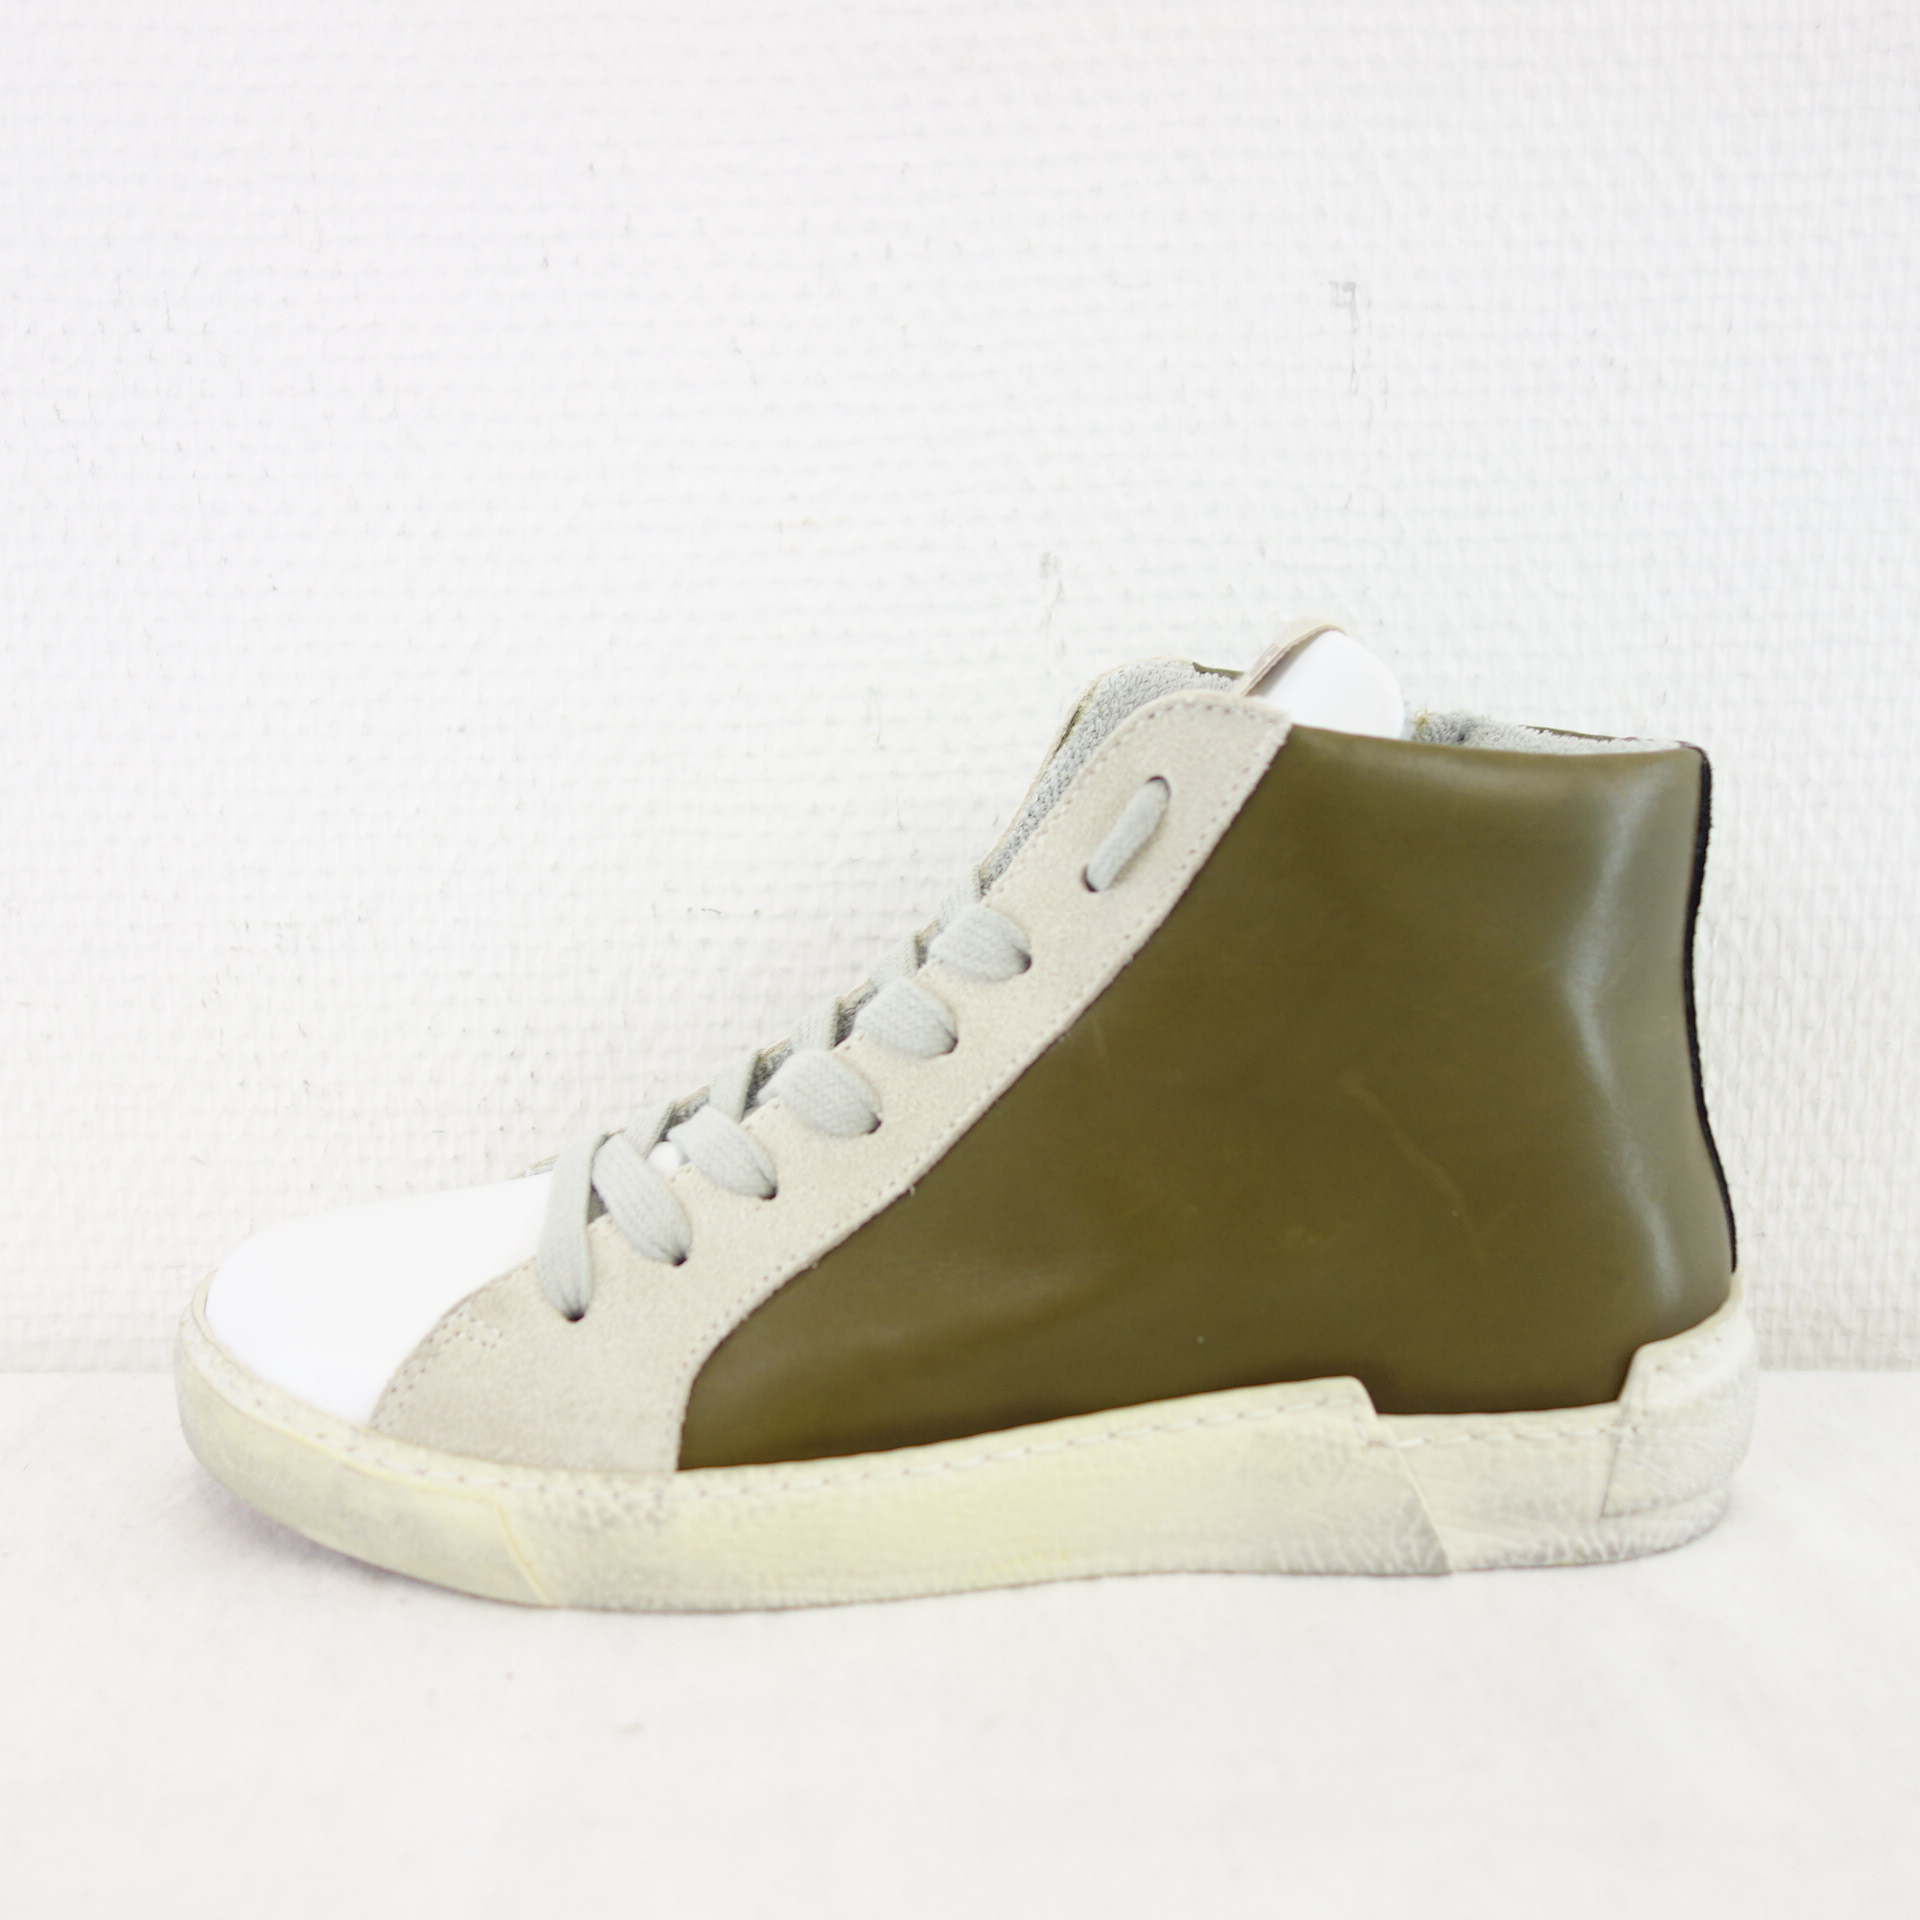 MELINE MLN Damen Sport Schuhe High Top Sneaker Weiß Khaki Leder Gr 37 Modell NK 5050